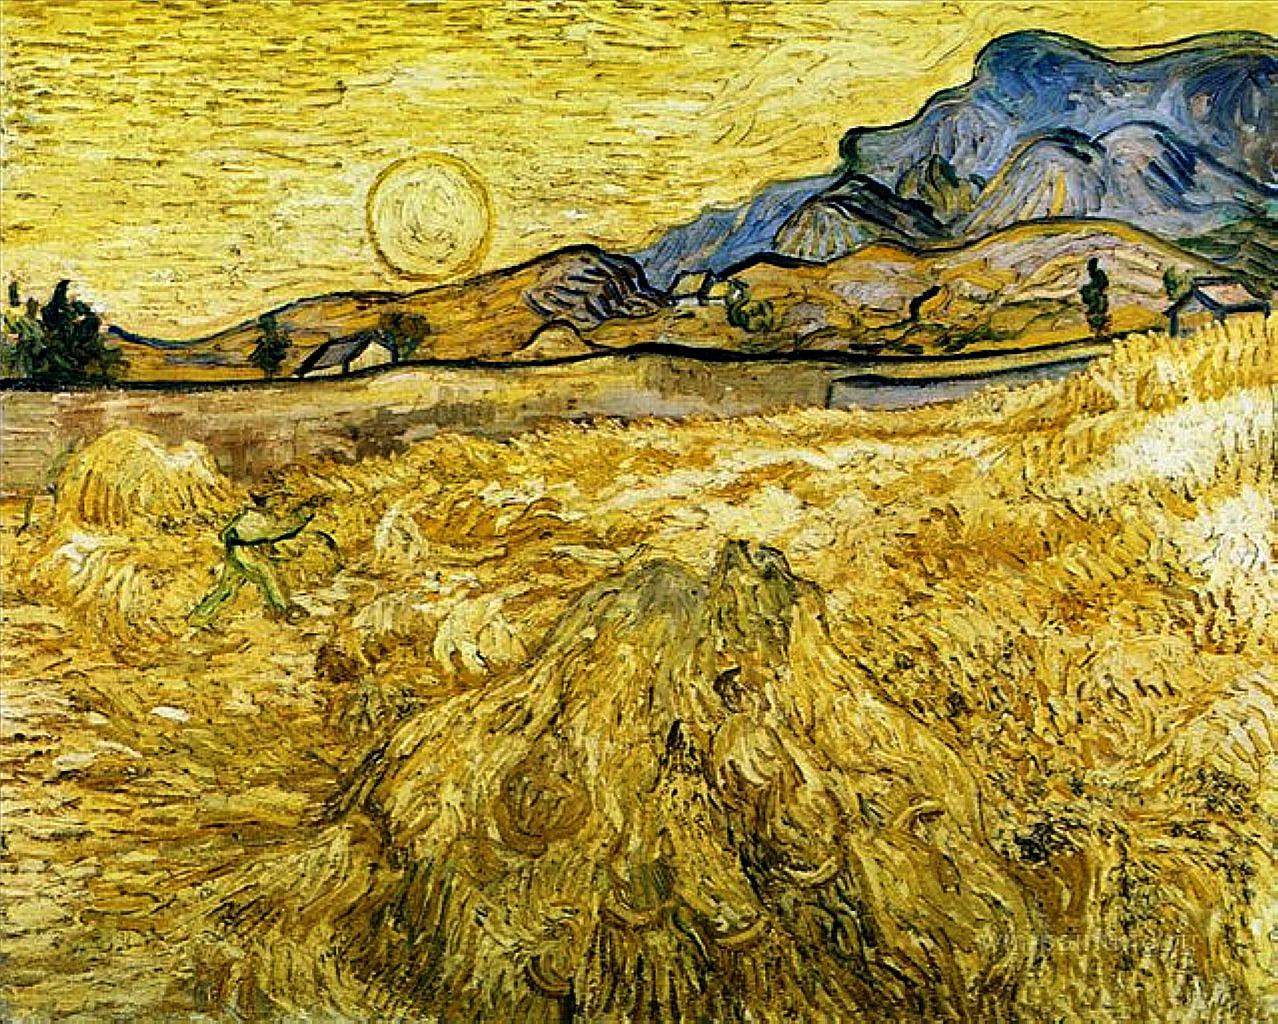 Винсент Ван Гог. "Пшеничное поле сл жнецом и солнцем". 1889. Музей Крёллкр-Мюллер, Оттерло.